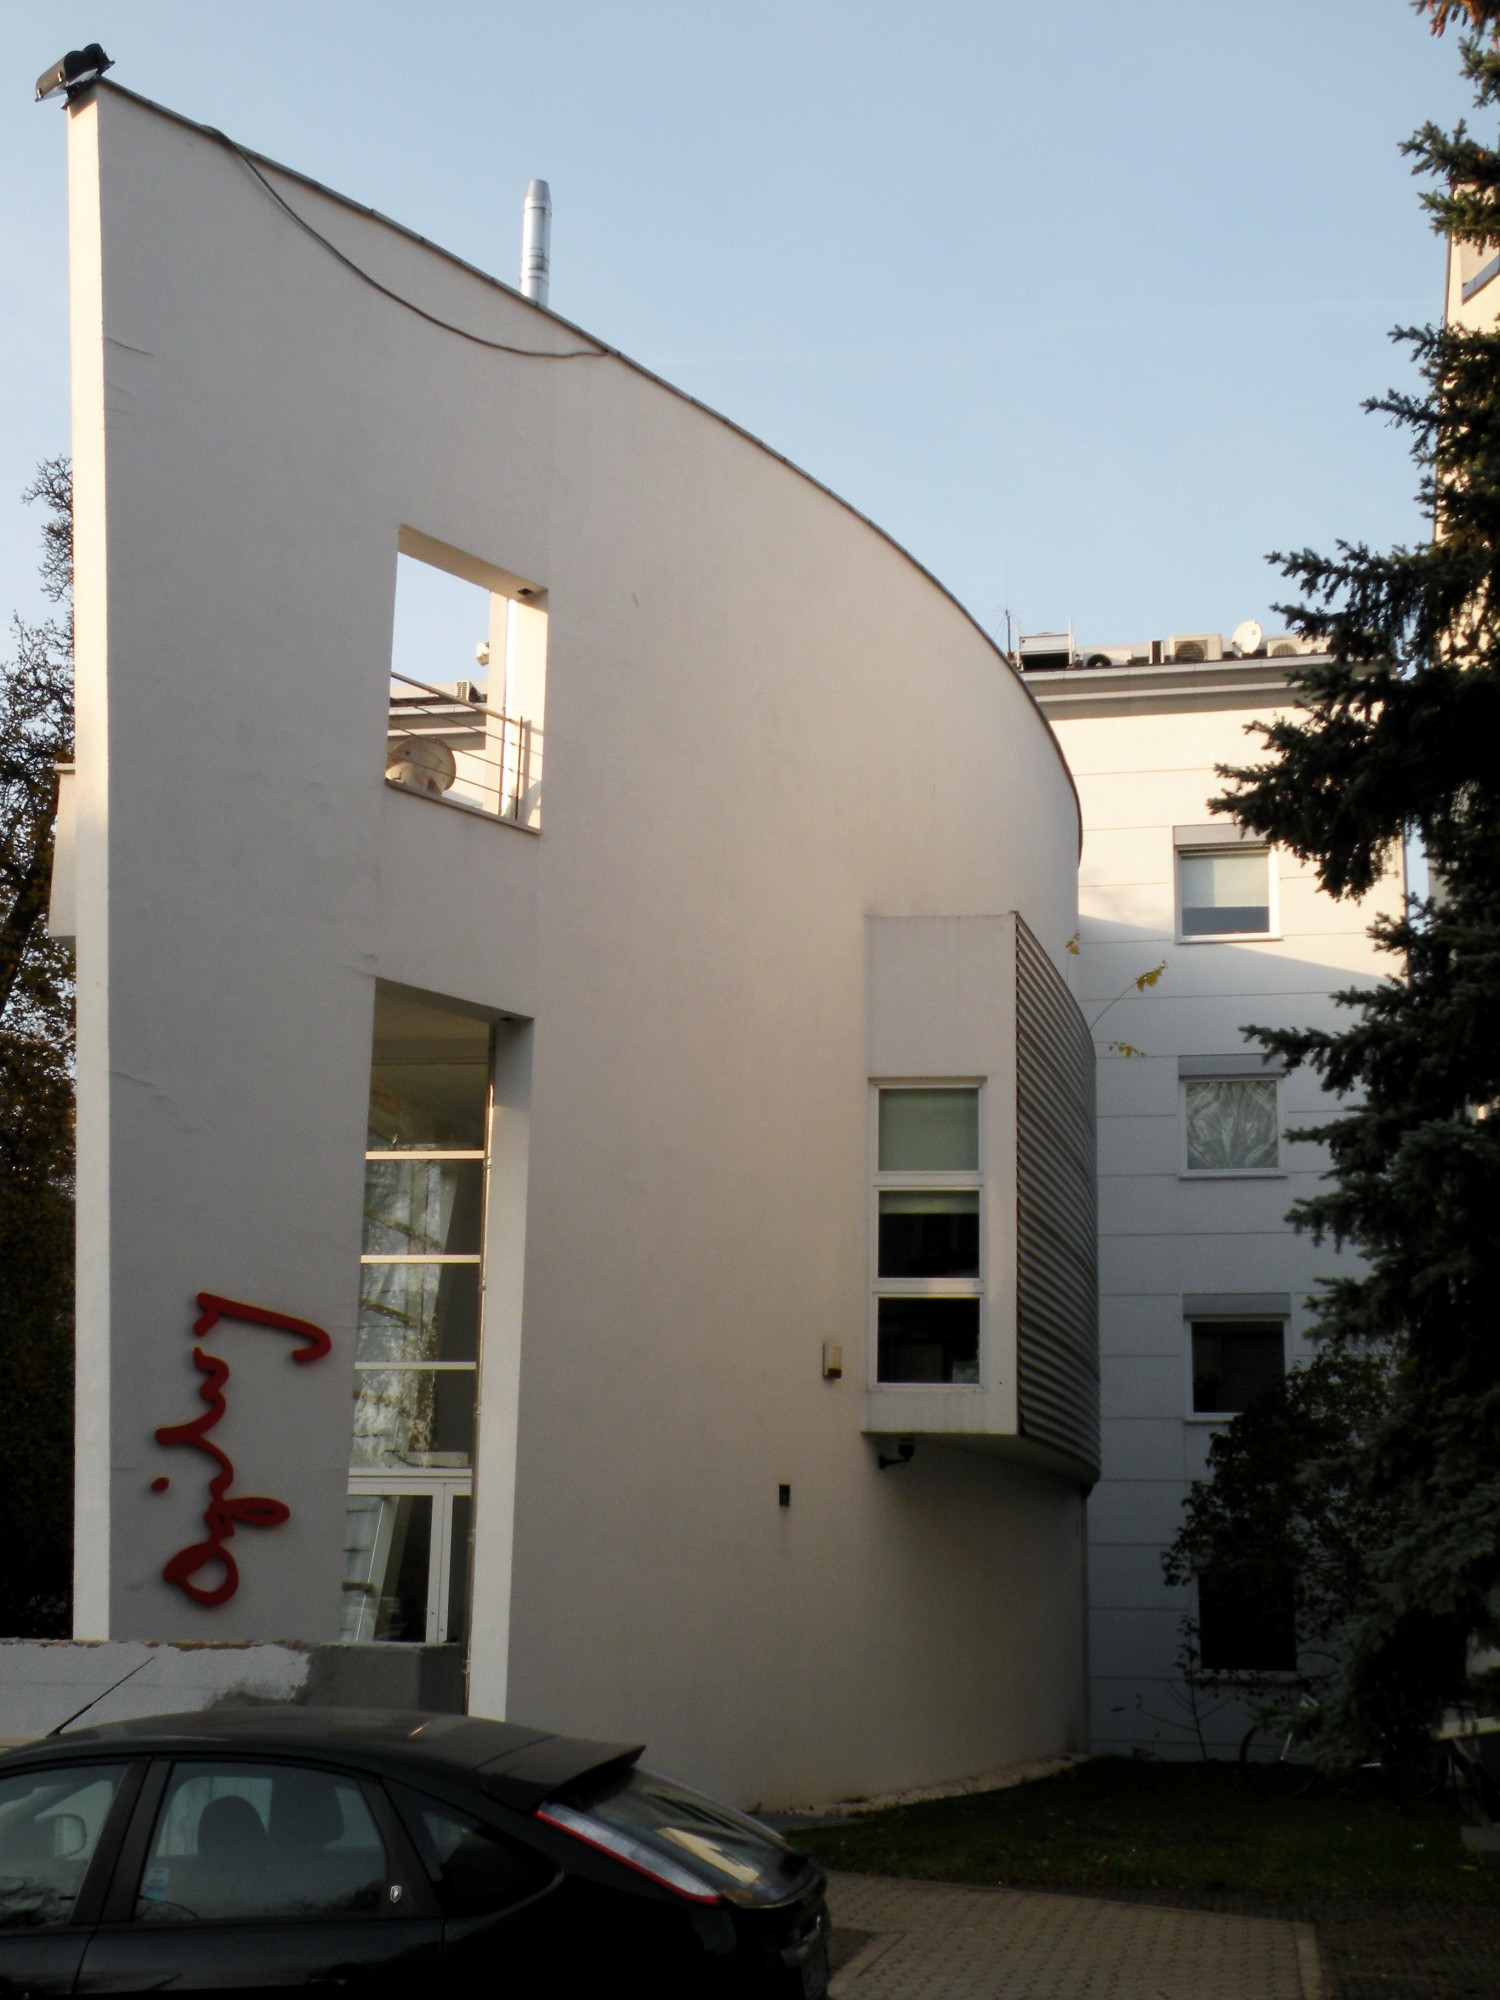 Zdjęcie architektury budynku Siedziba Agencji Reklamowej Gruppa66 Ogilvy